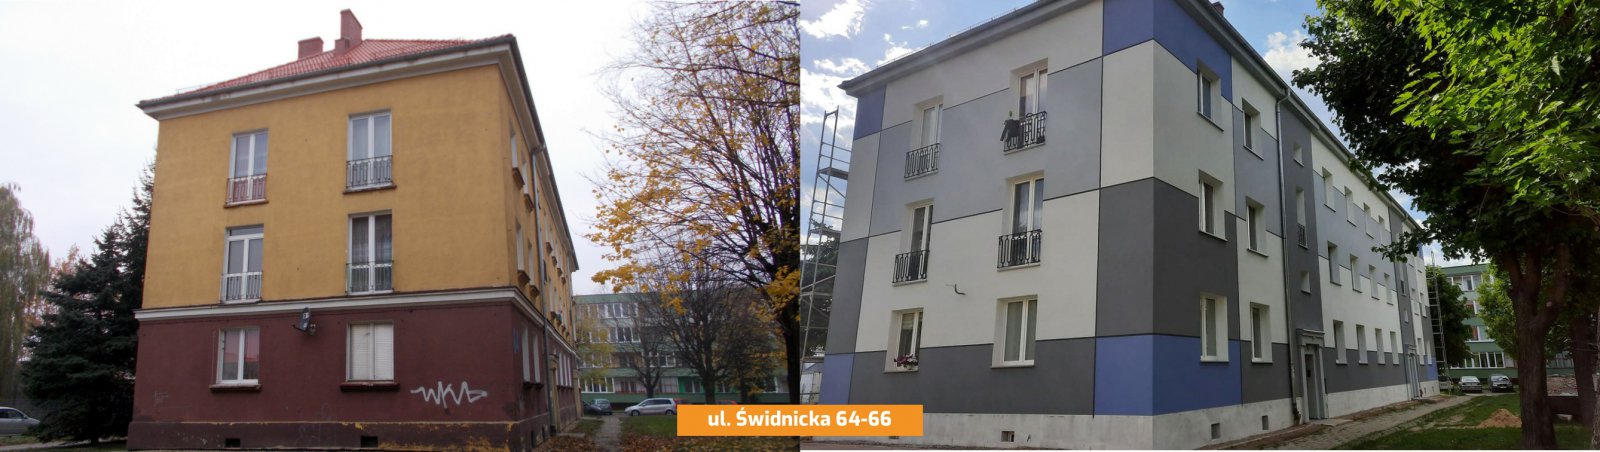 Budynek wielorodzinny przed i po remoncie